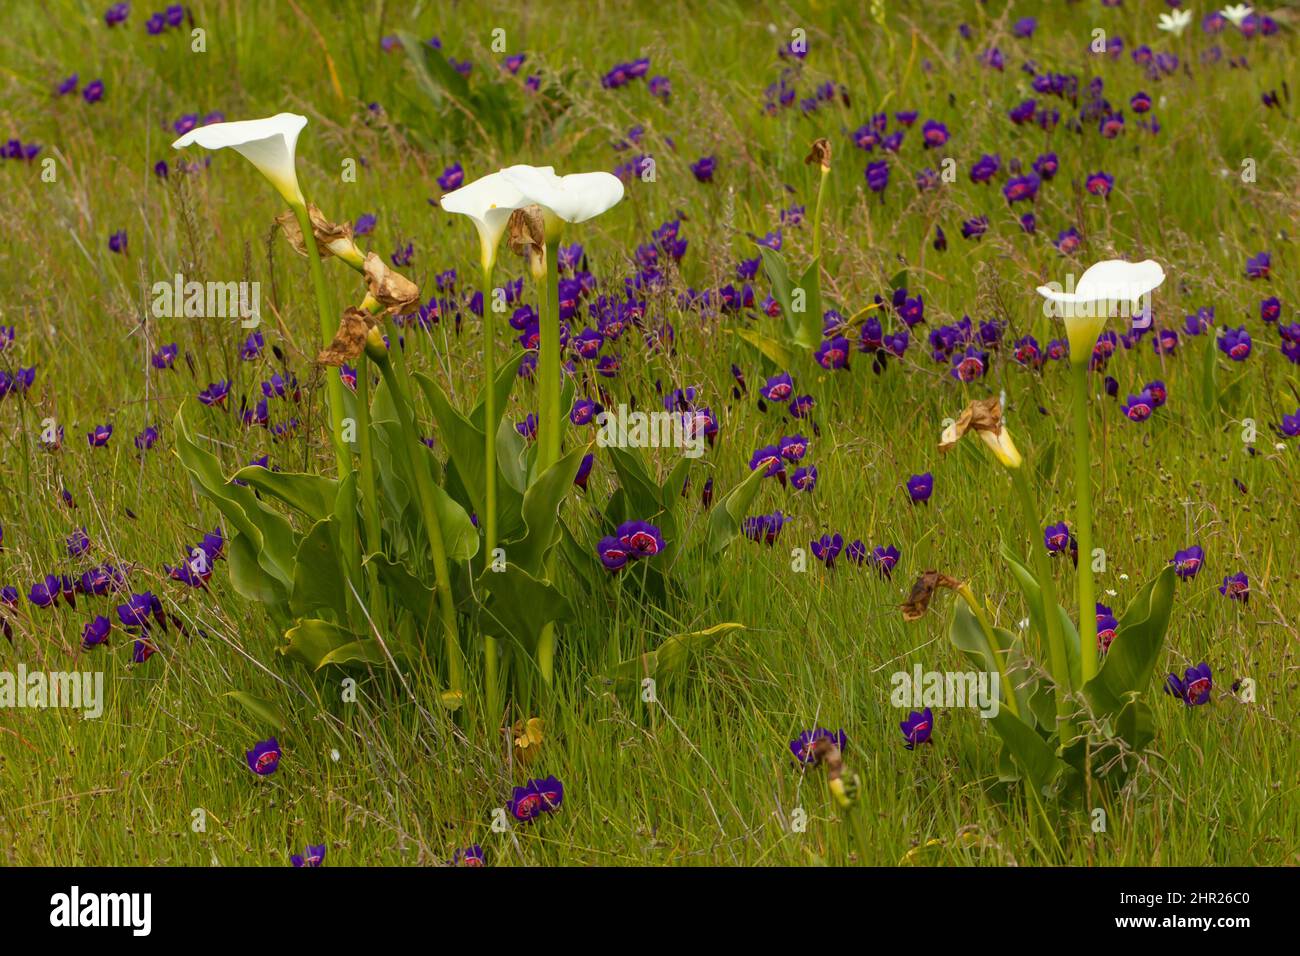 Fiori di Wilflowers sudafricani: Zantedeschia aethiopica (fiore bianco) e Geissoriza radians (fiore viola) in habitat vicino Darling, Sudafrica Foto Stock